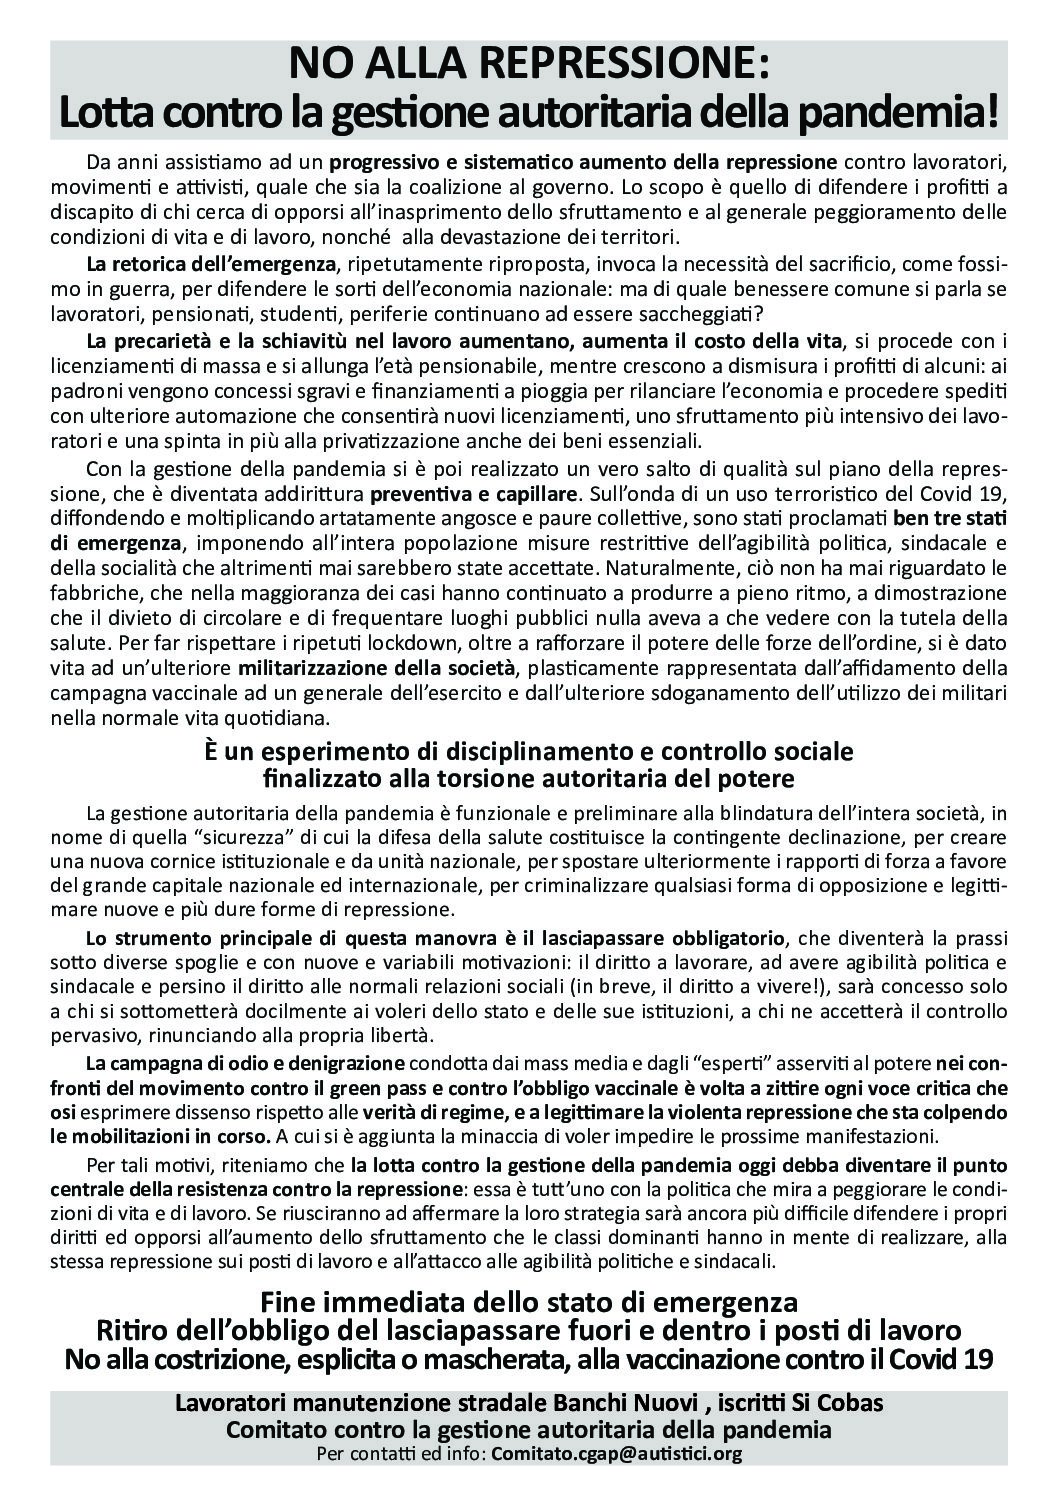 Napoli: Volantino “No alla repressione: Lotta contro la gestione autoritaria della pandemia!”